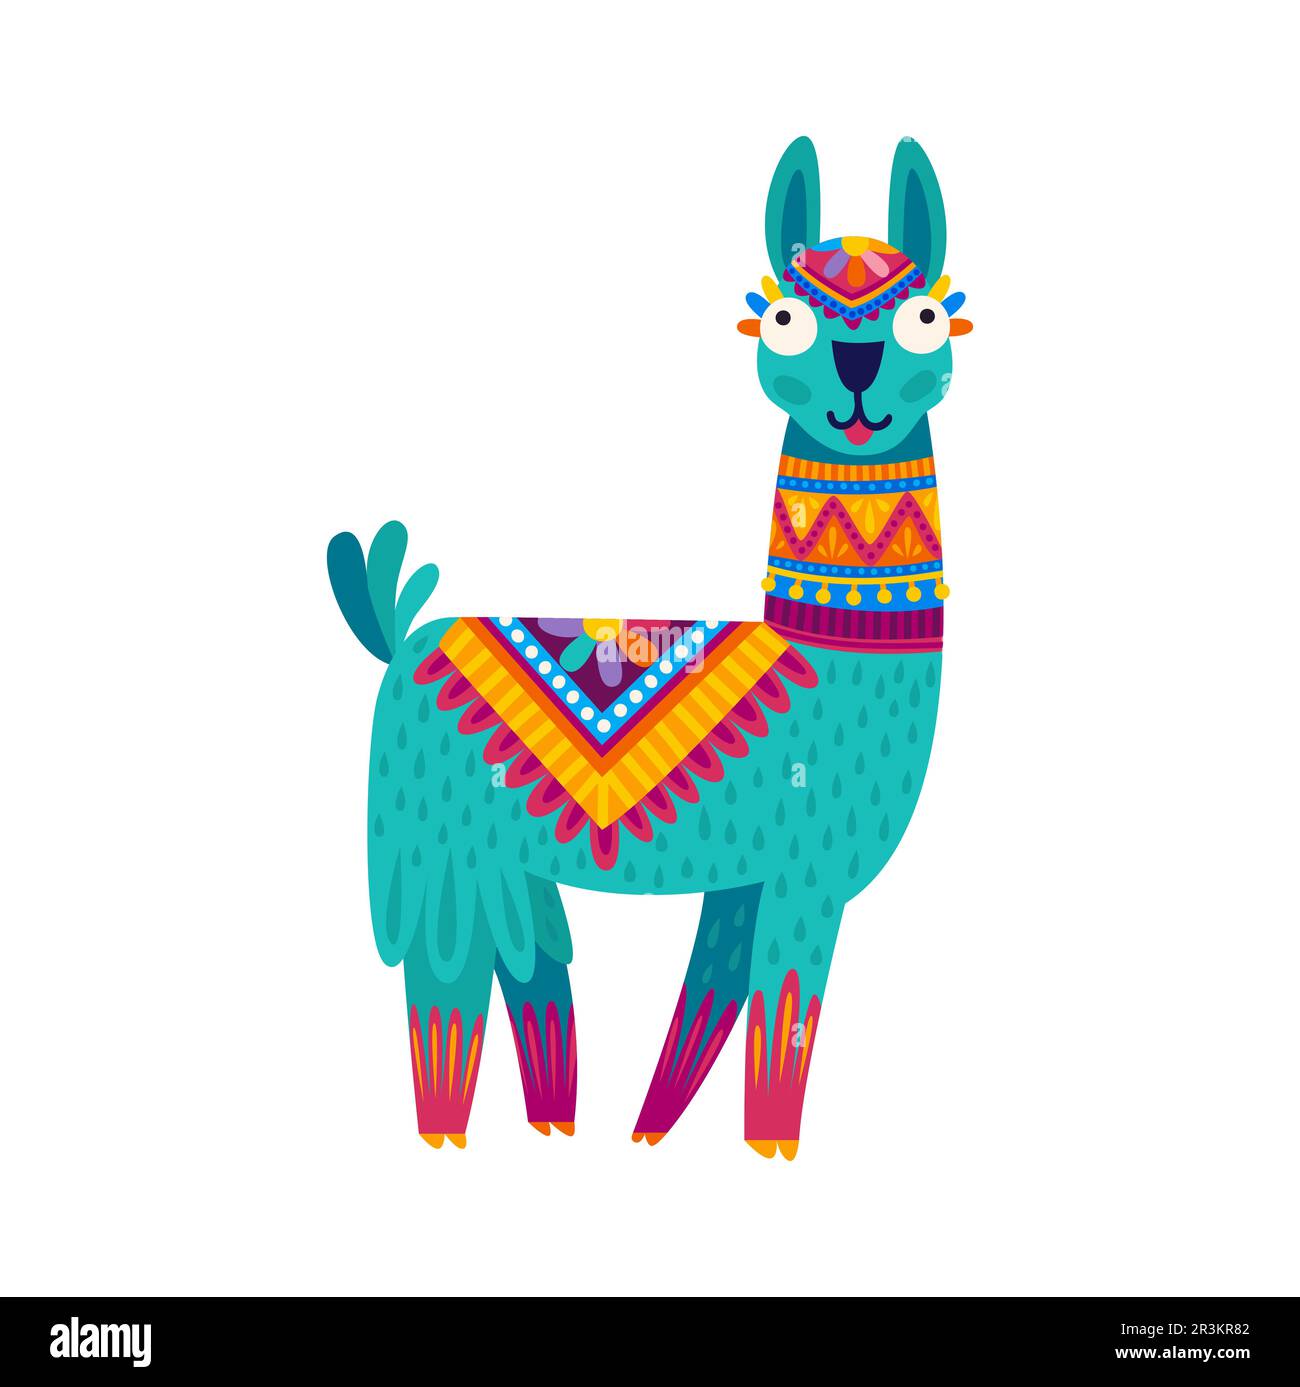 Drôle de vert alpaga, lama personnage de dessin animé avec des accessoires de conception ethnique. Vecteur souriant lama avec de grands yeux, péruvien ou mexicain personnage animal Illustration de Vecteur